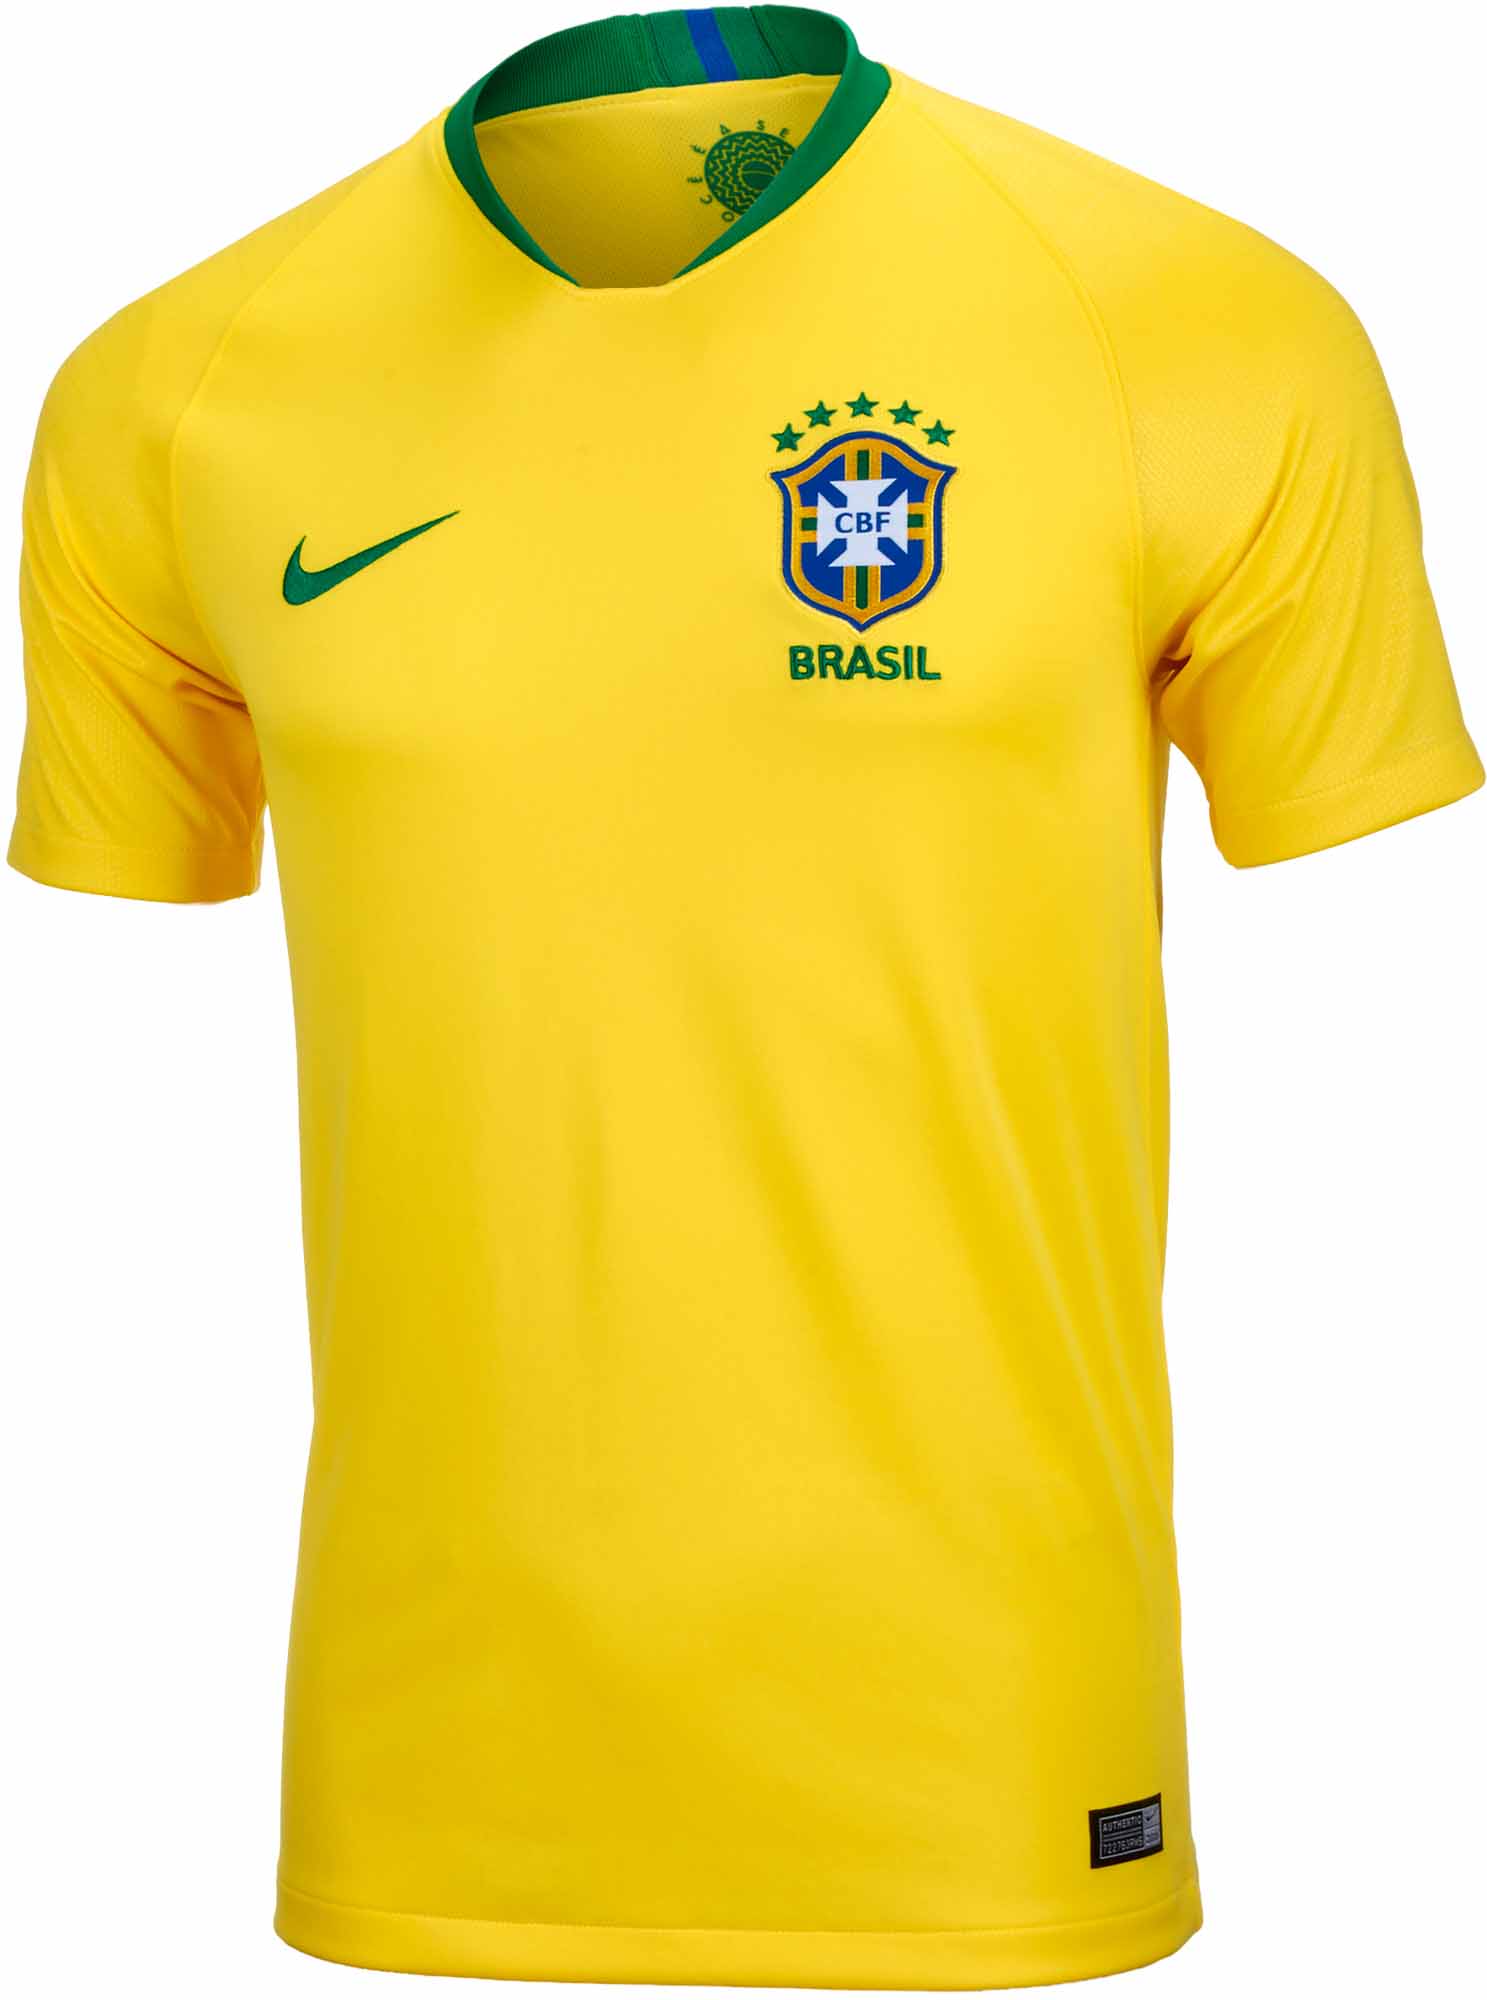 brazil jersey youth